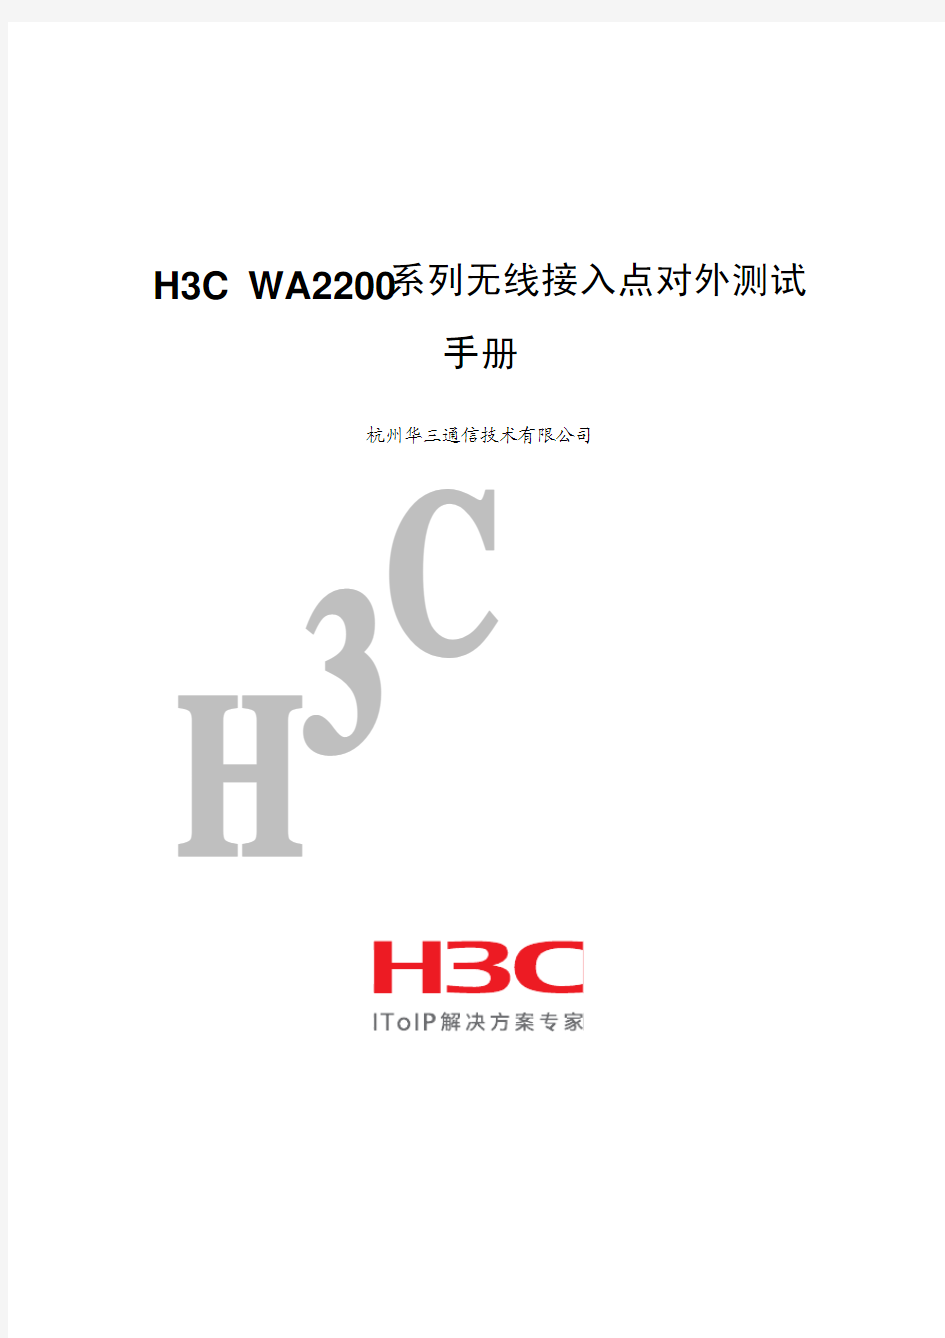 H3C WA2200系列无线接入点对外测试手册-WDS